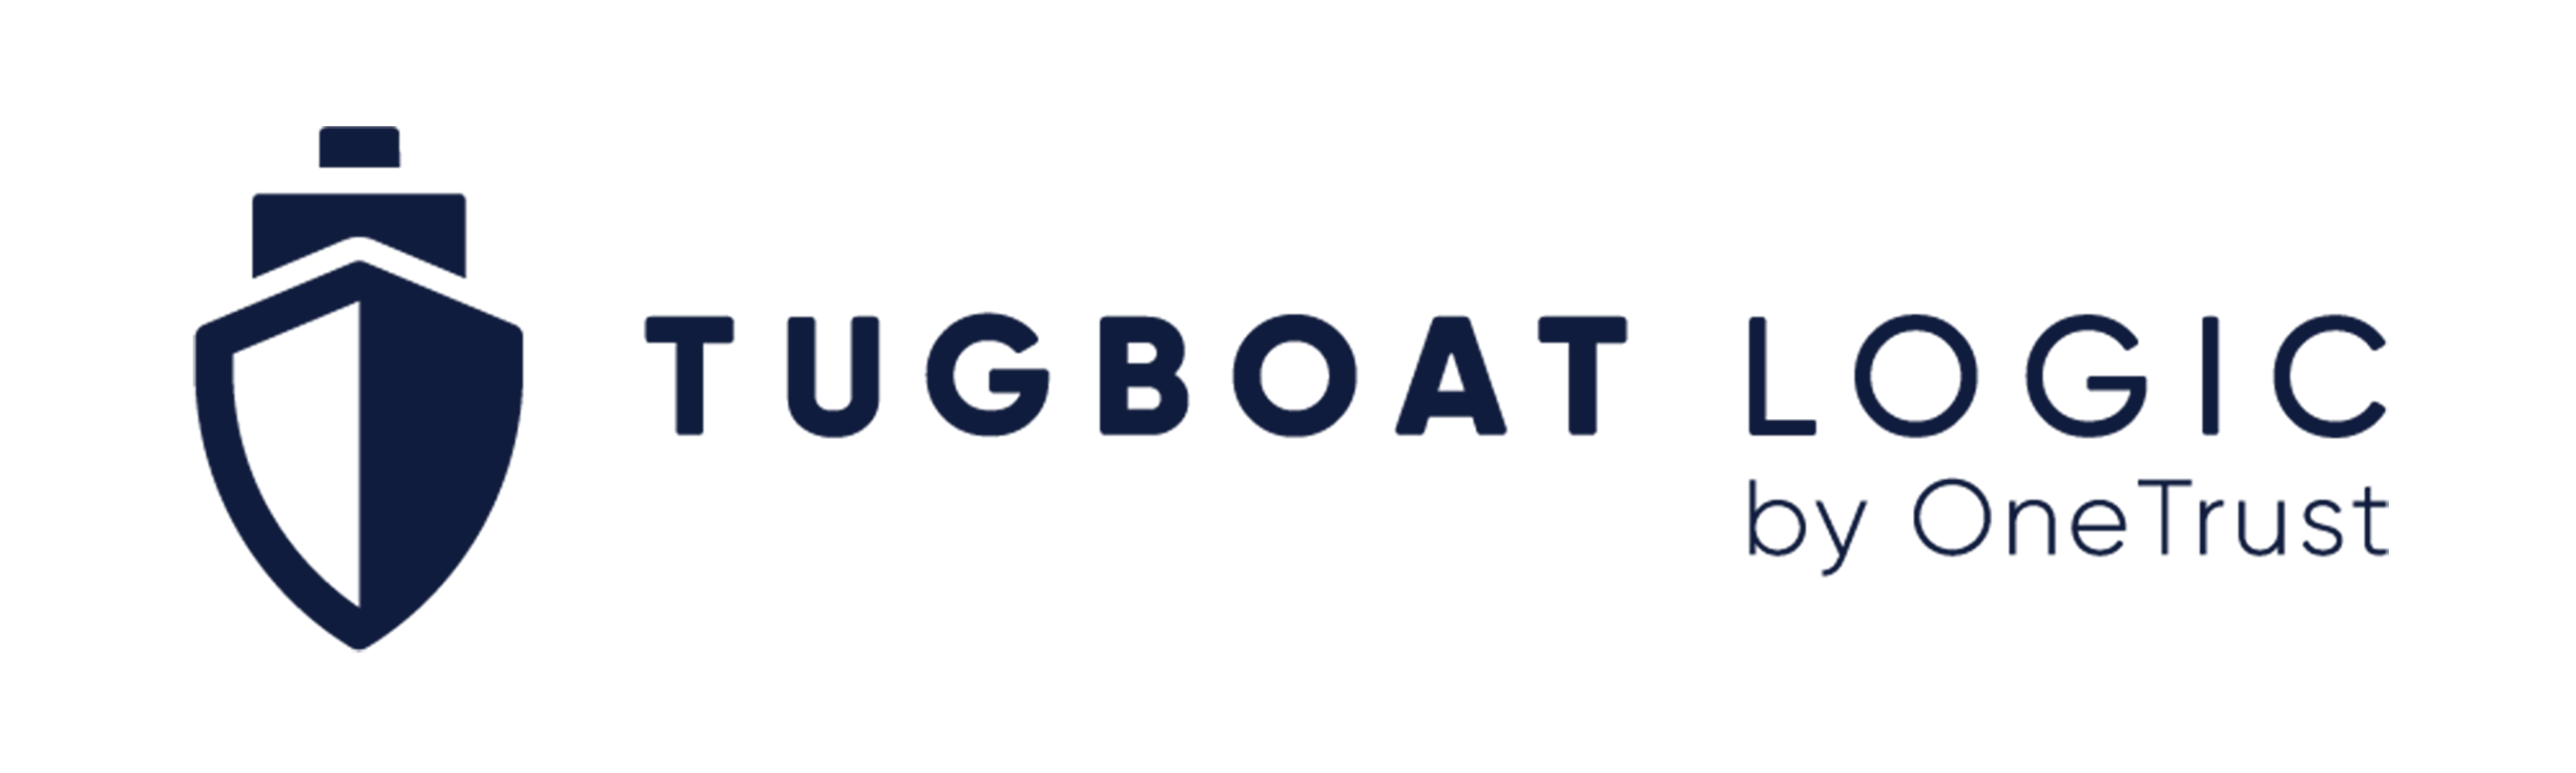 The Security Assurance Platform - Tugboat Logic